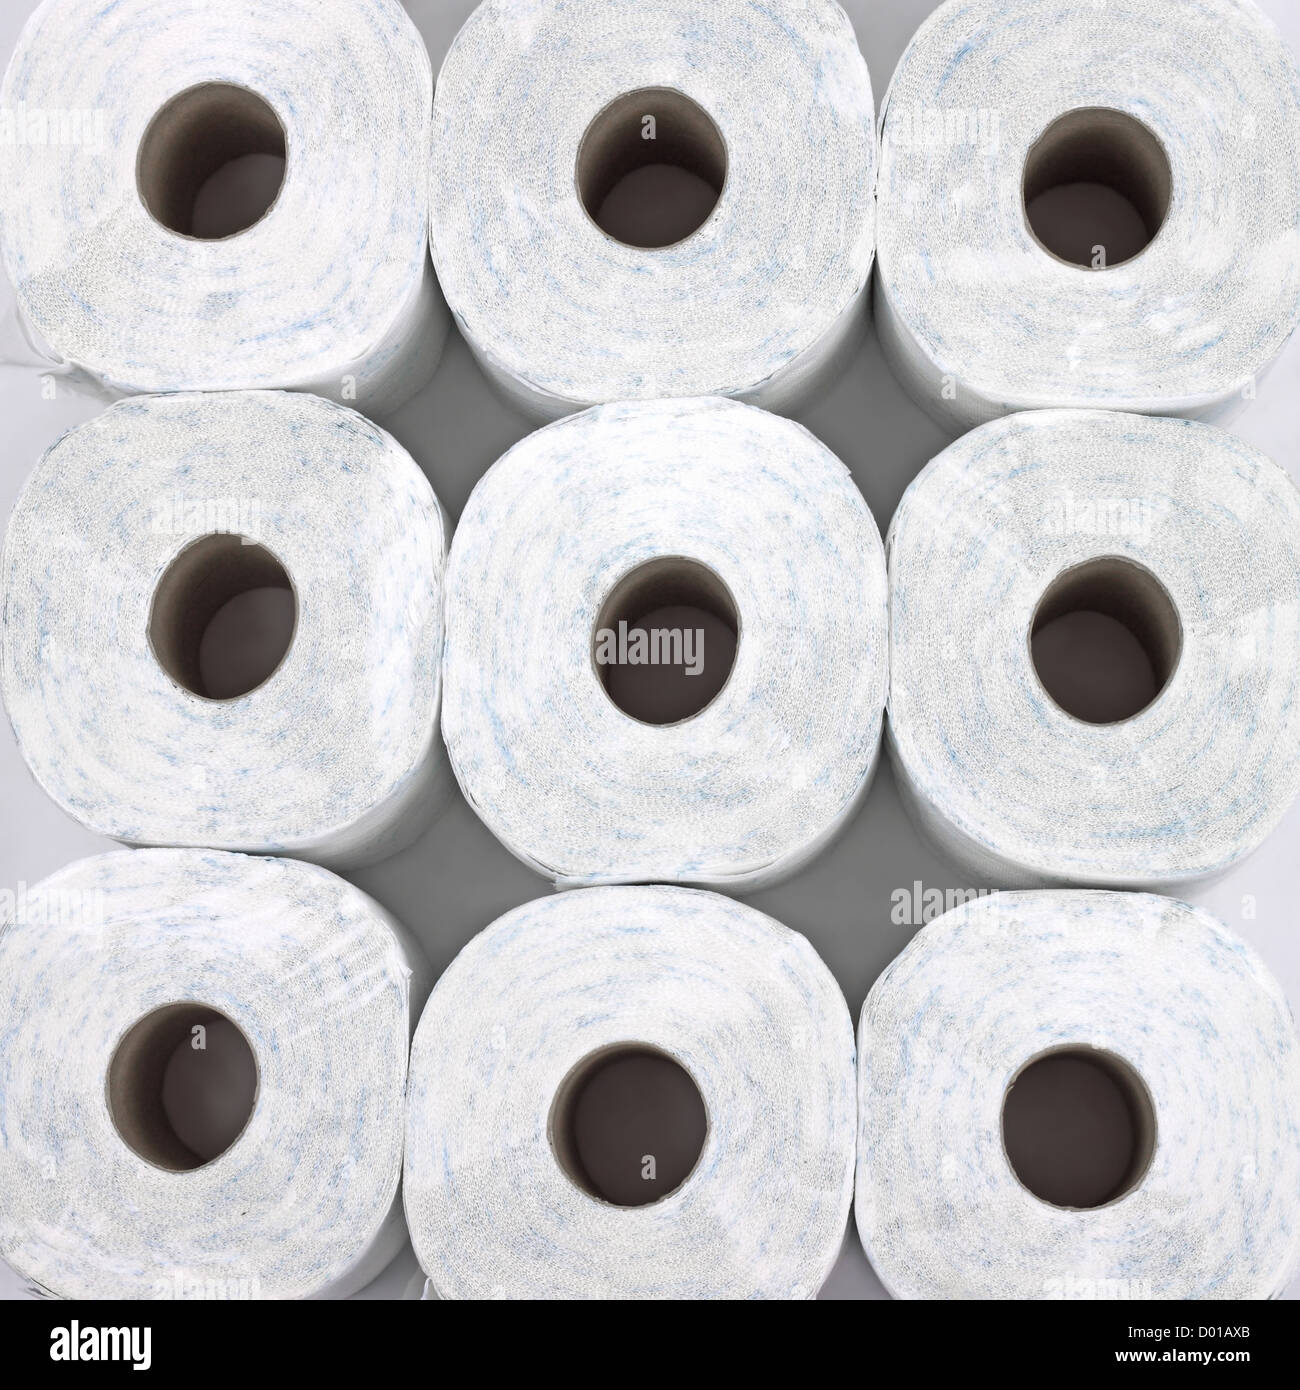 Rotoli di carta igienica su uno sfondo luminoso Foto Stock